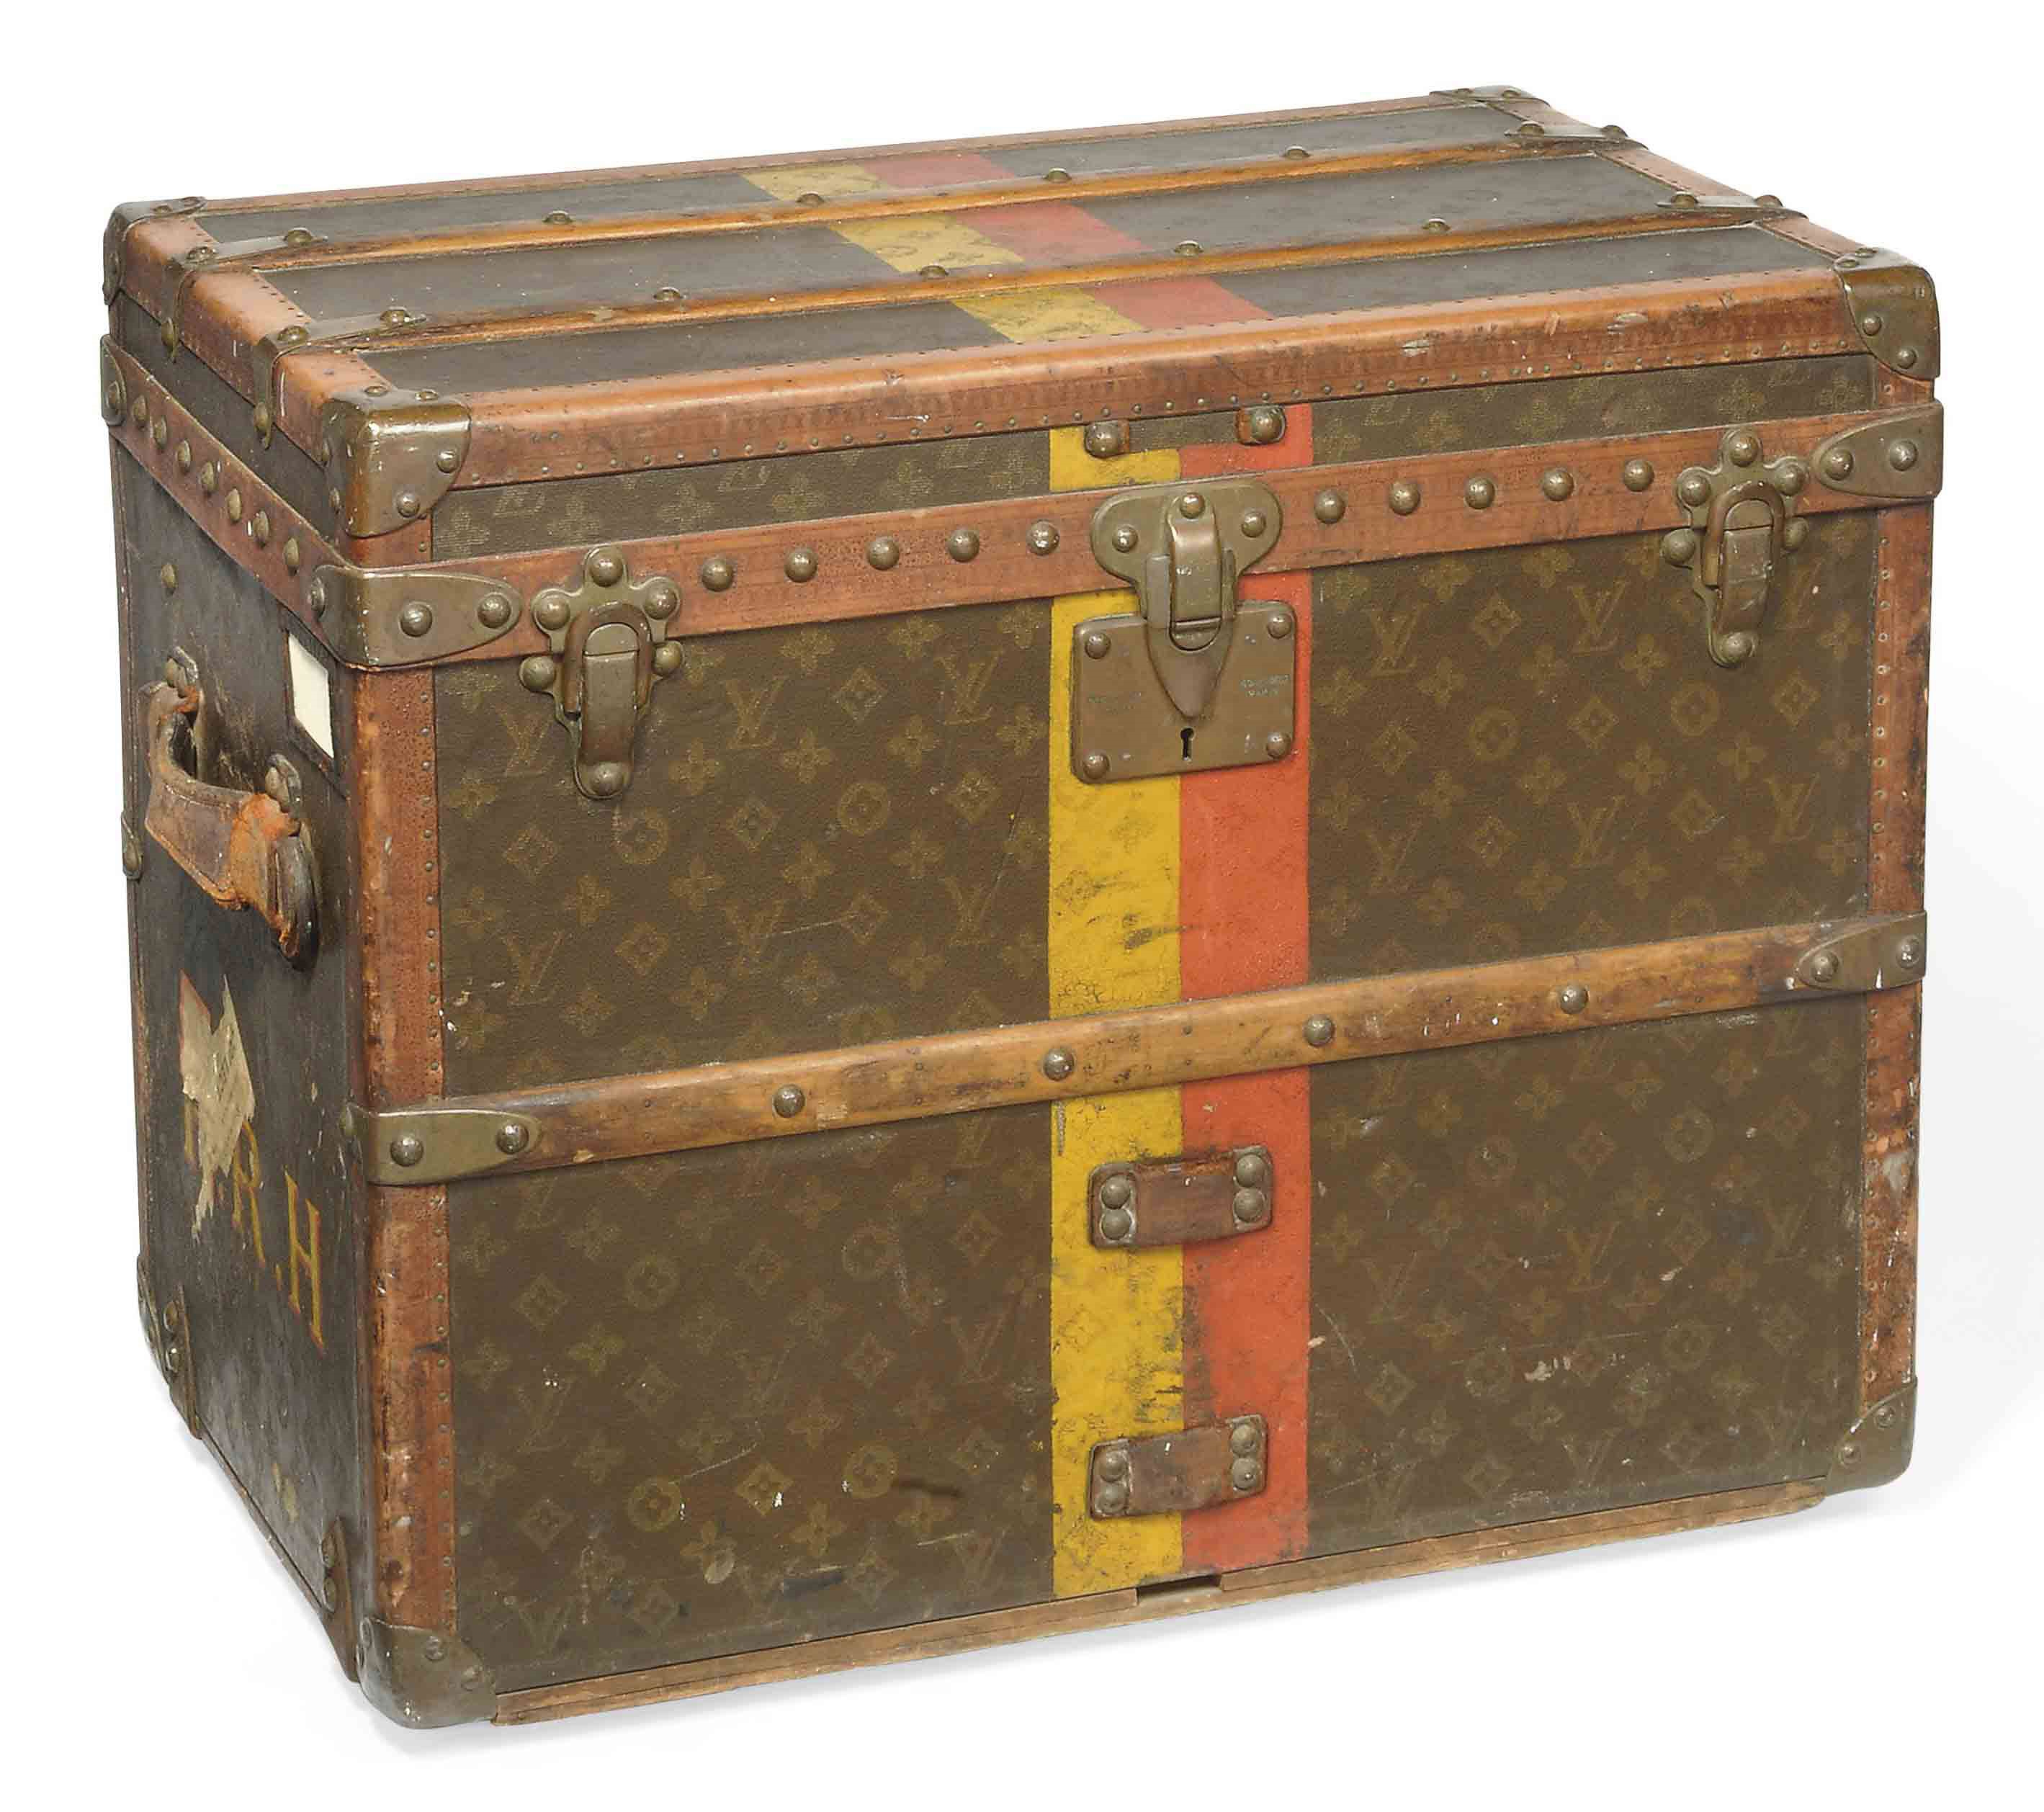 Louis Vuitton, Juego de neceser, maleta y funda de viaje (Circa 1900)